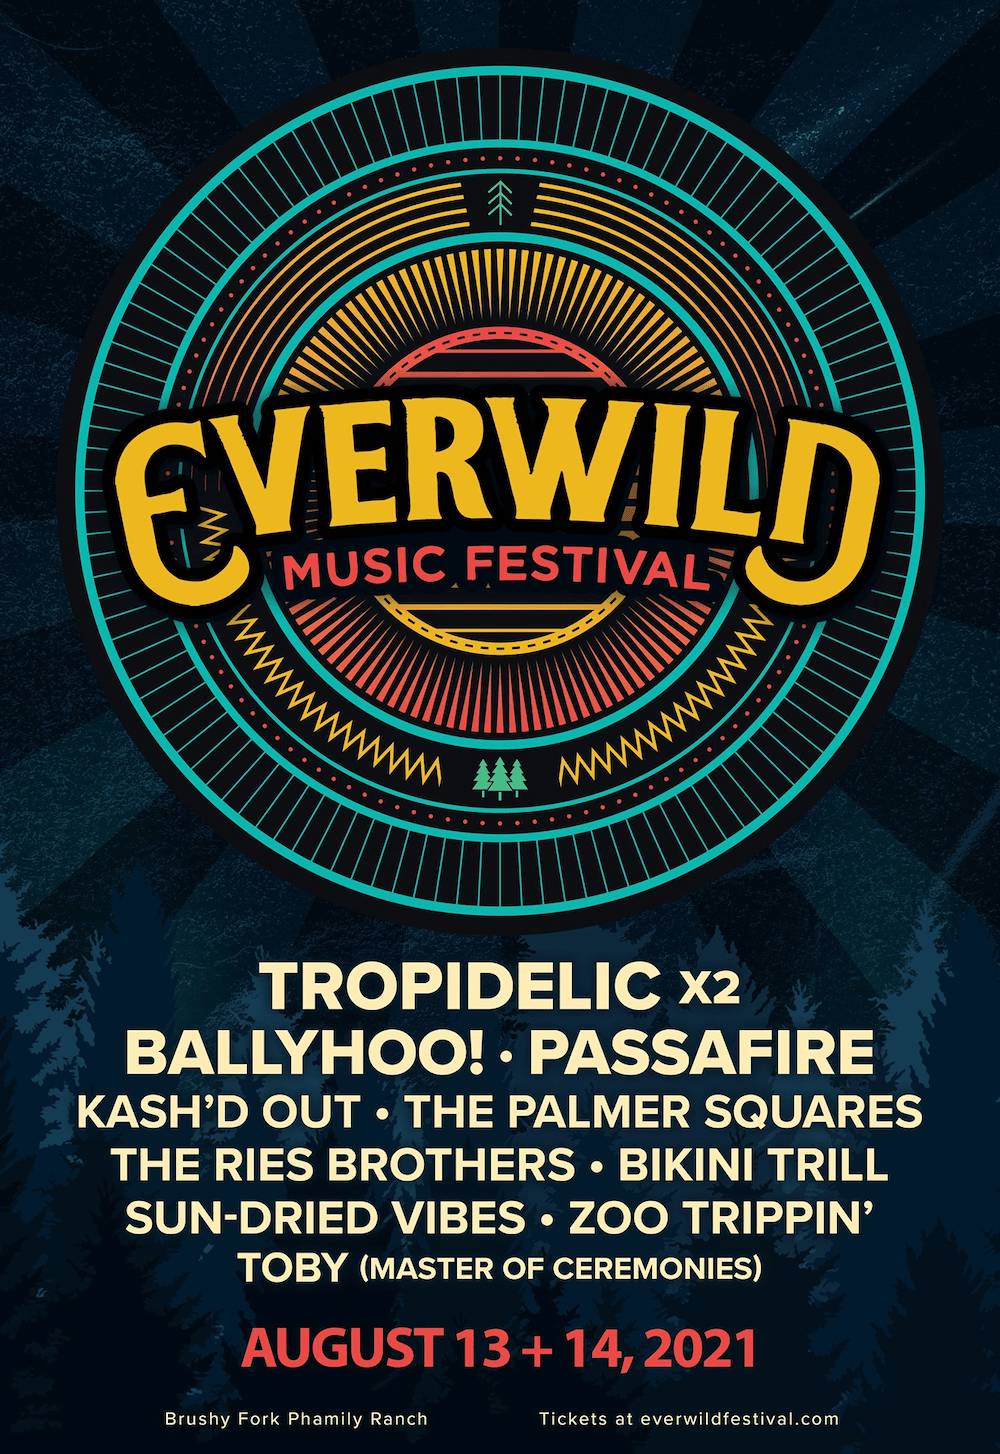 EVERWILD Music Festival Grooveist